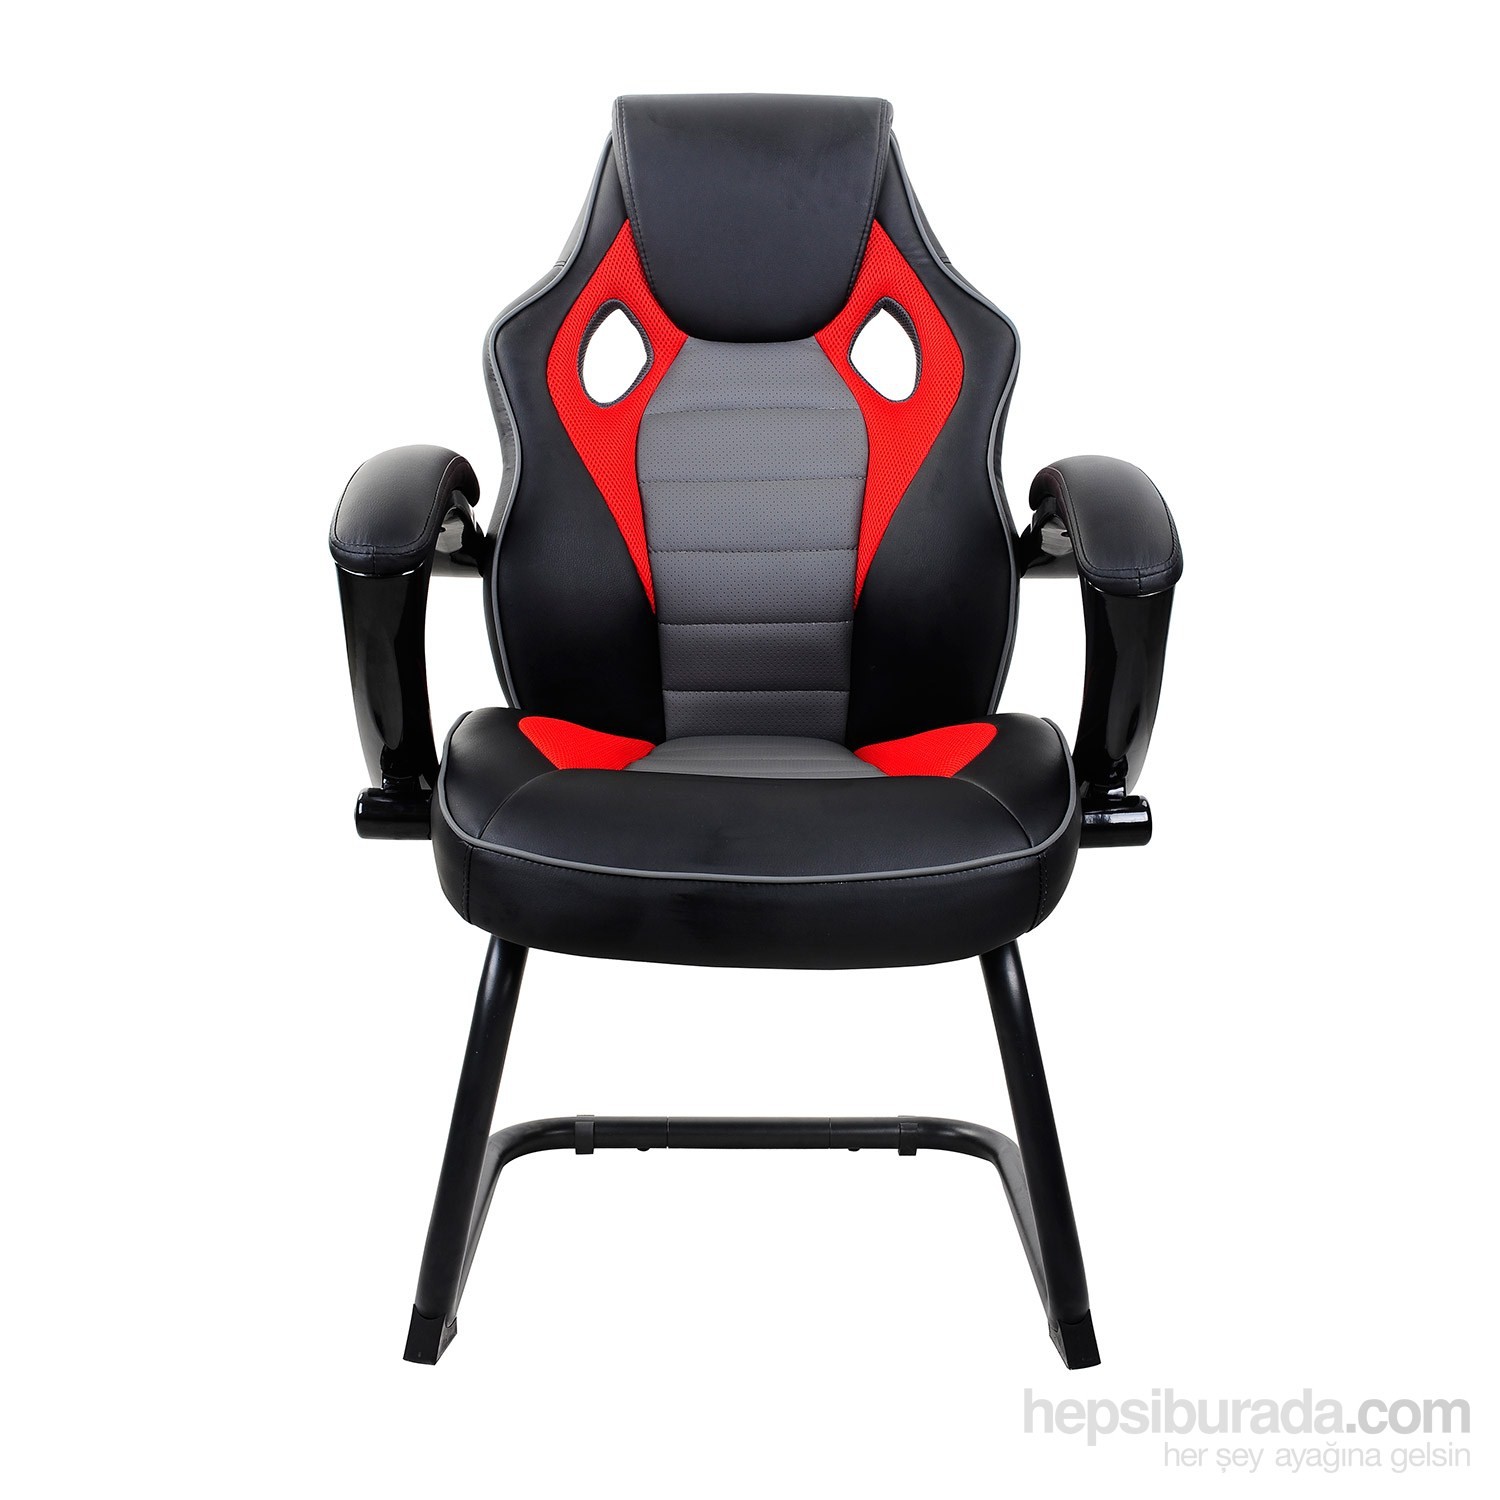 Max Office Racing Misafir koltuğu Siyah Gri Fiyatı